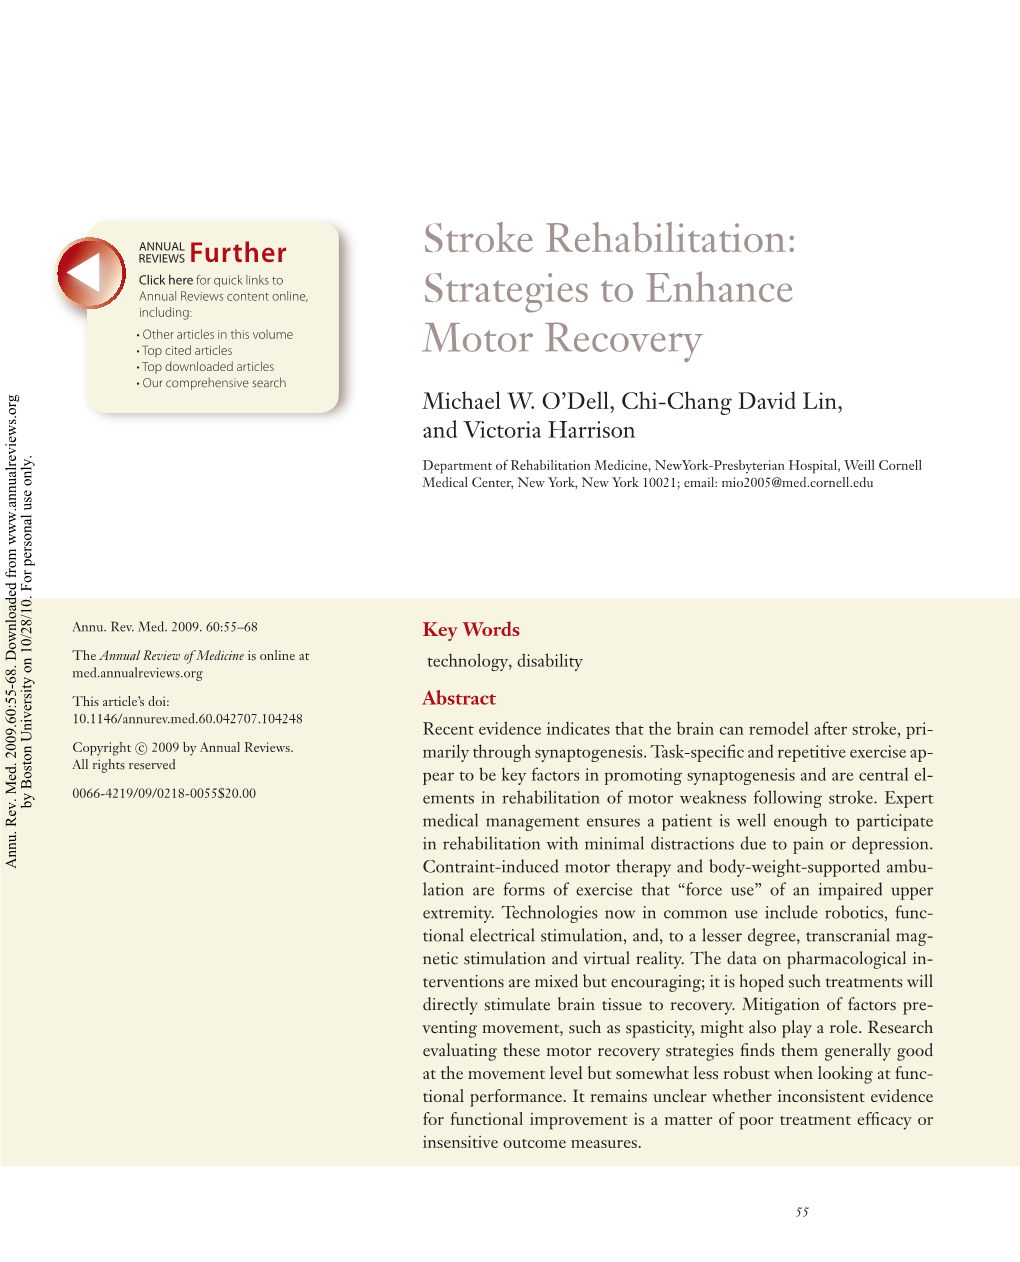 Stroke Rehabilitation: Strategies to Enhance Motor Recovery